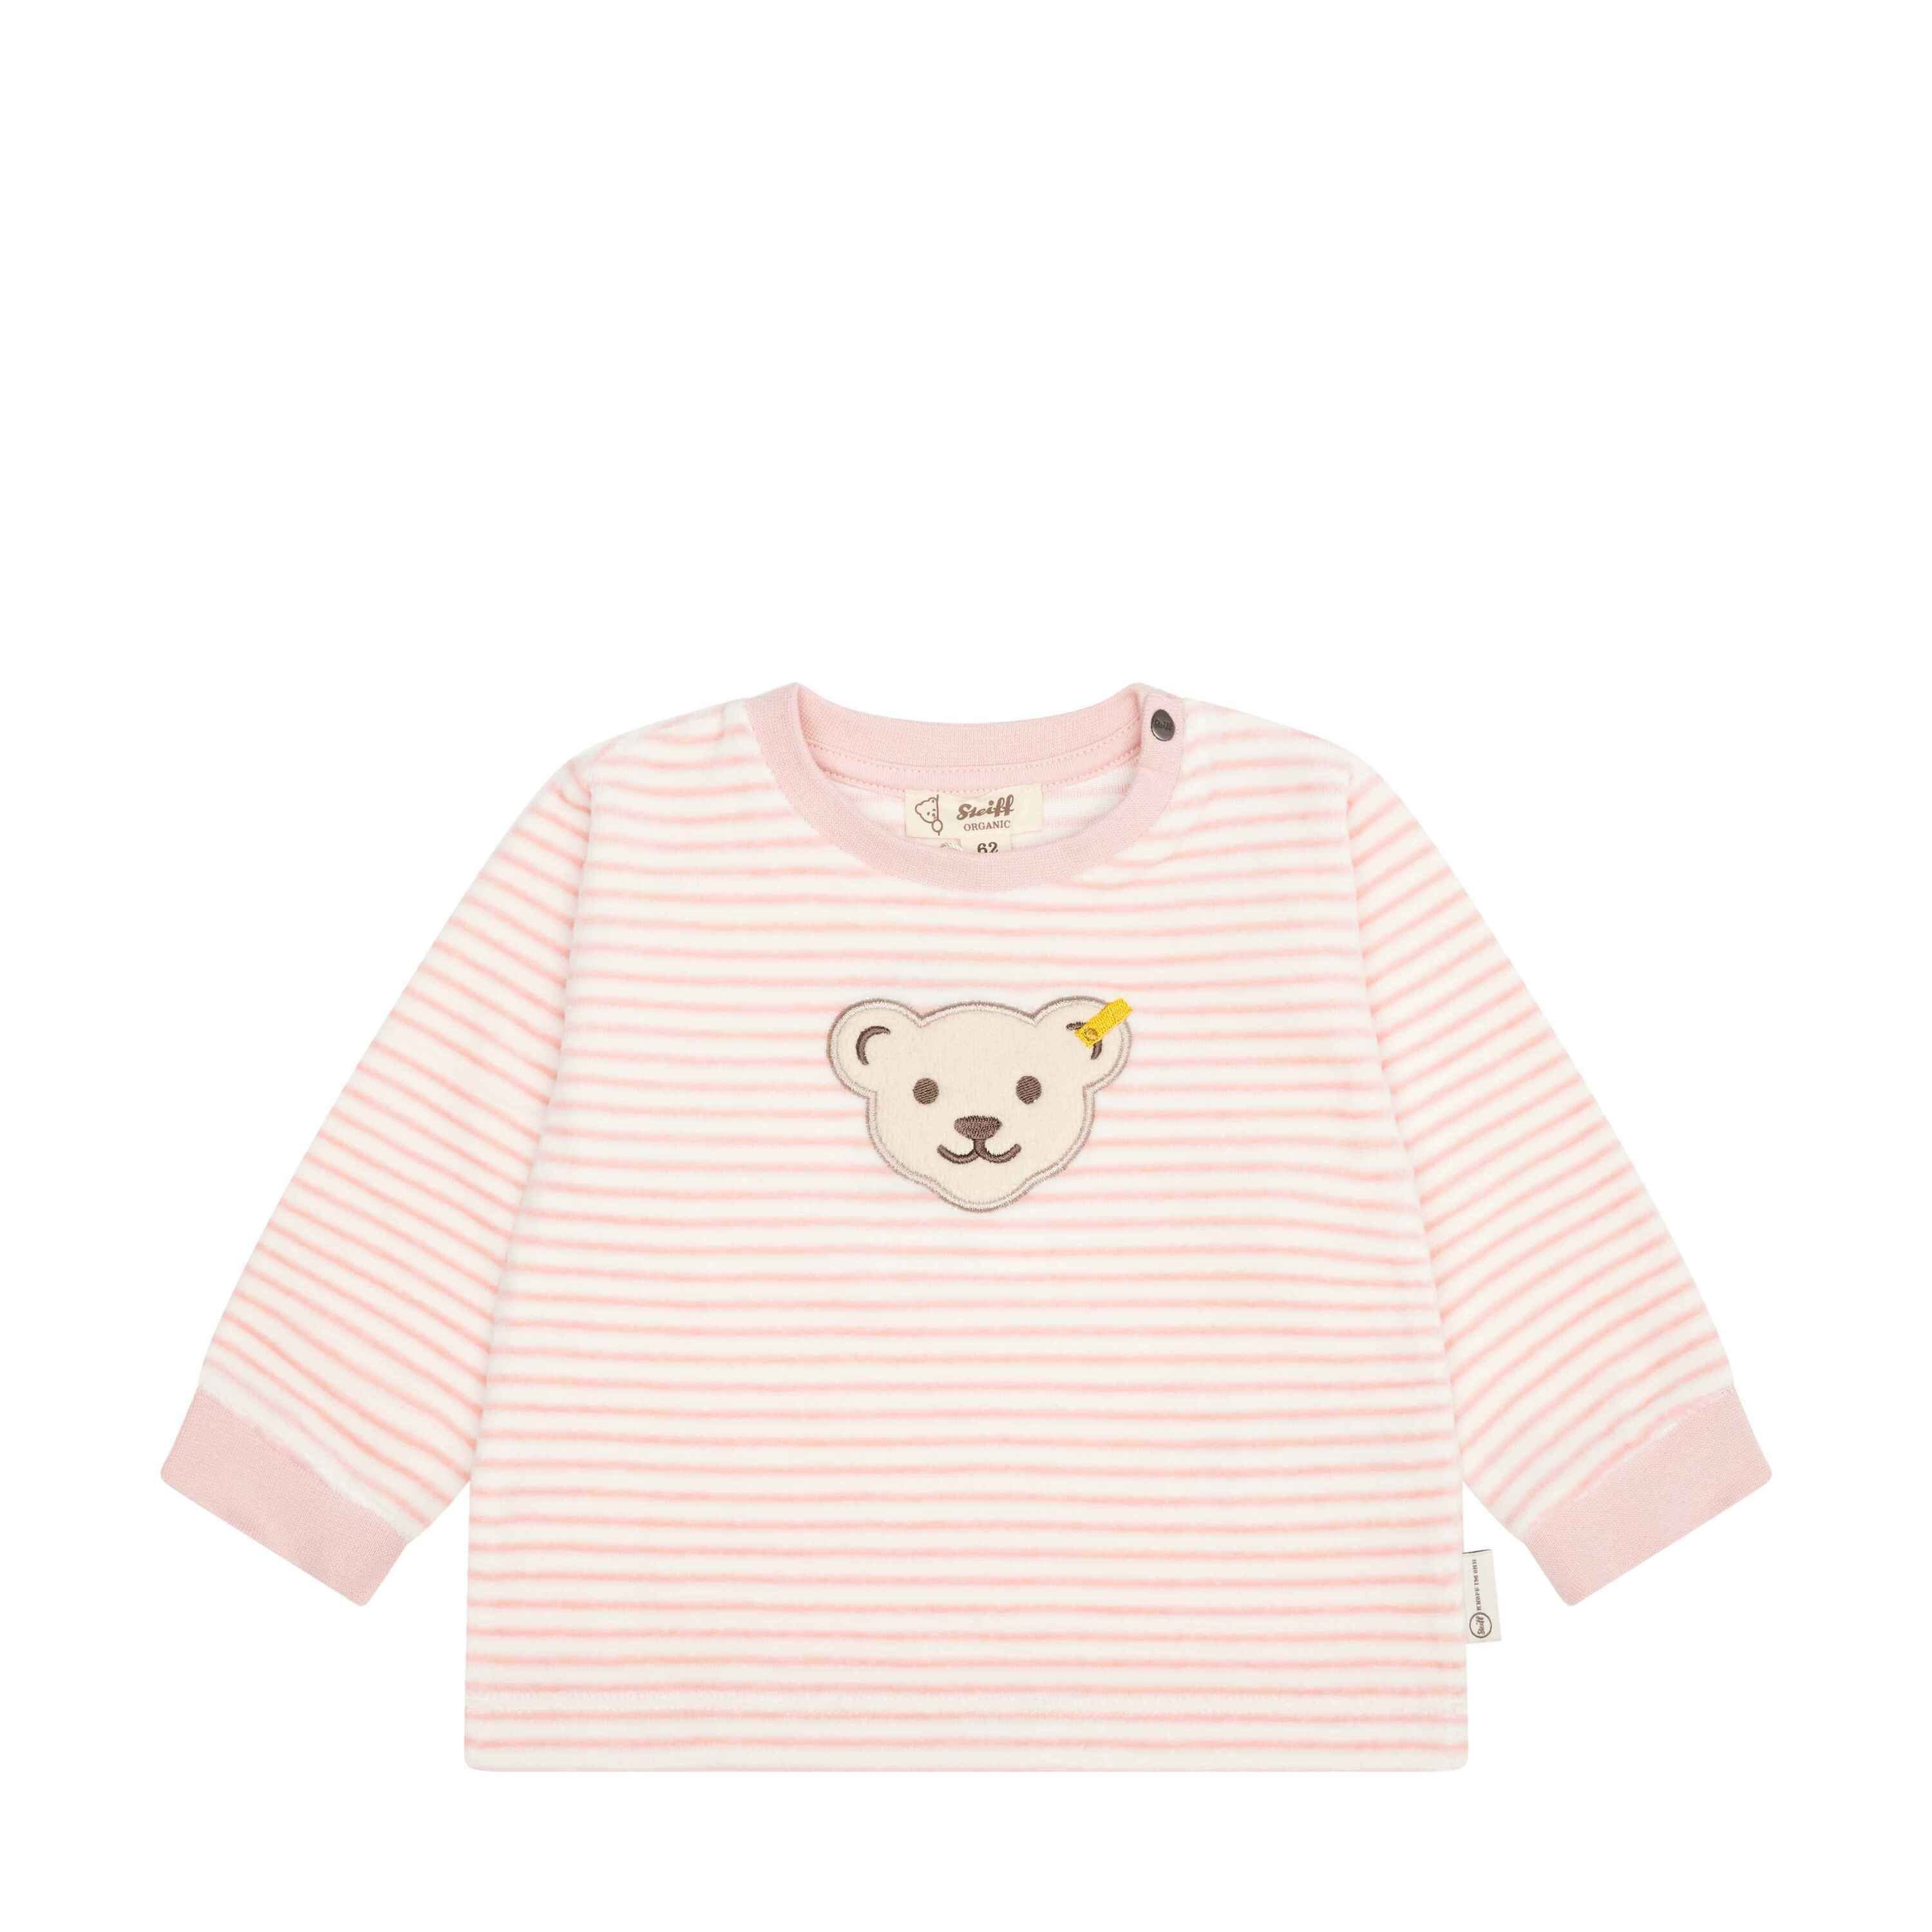 Steiff Sweatshirt Sweatshirt GOTS Baby Wellness lässig mit Teddykopf silver pink